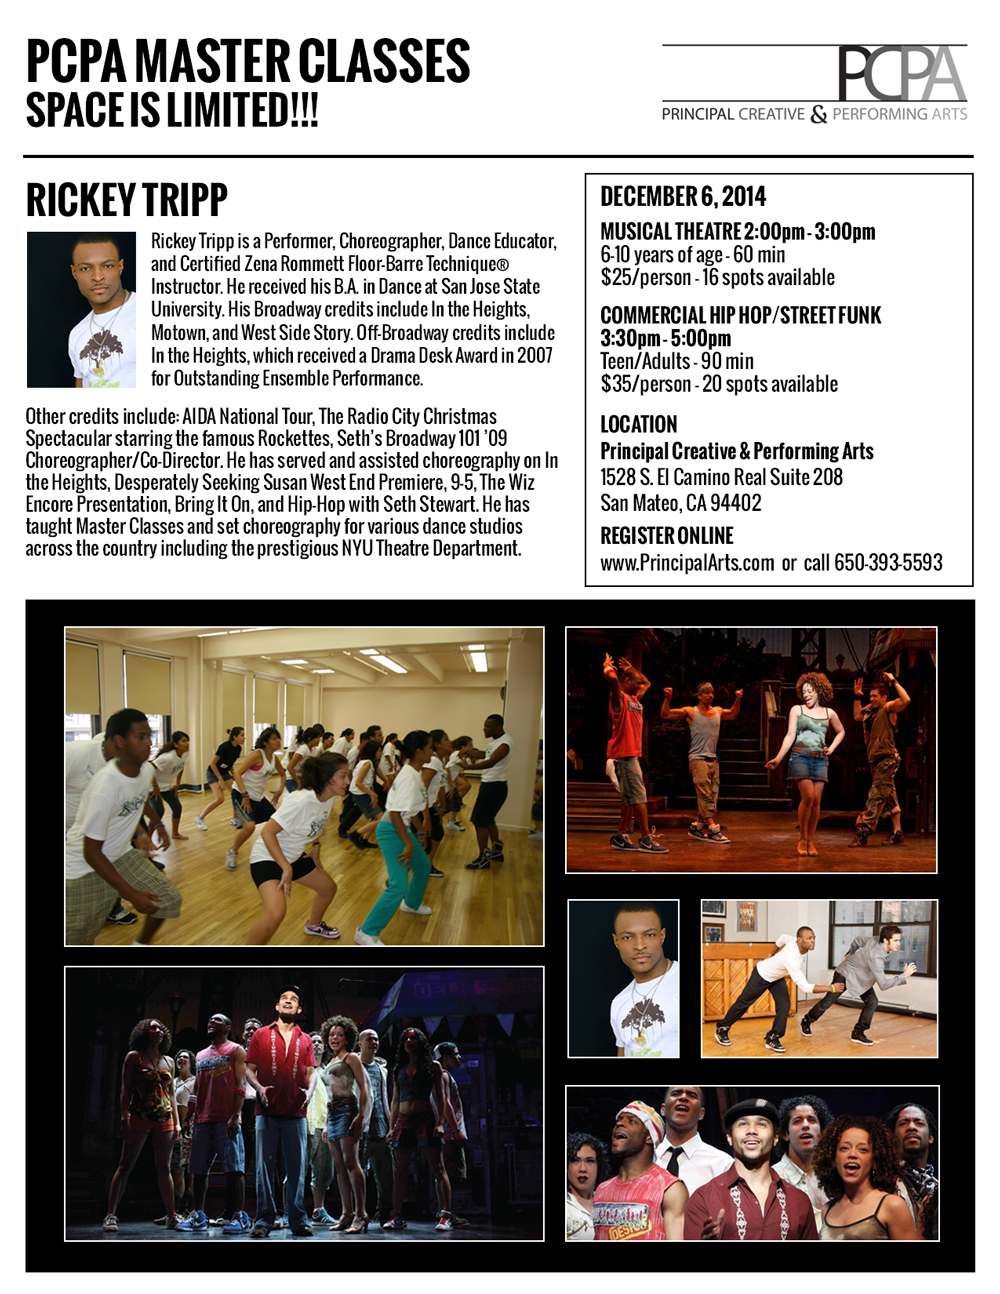 Rickey Tripp - Dancer, Choreographer, Instructor